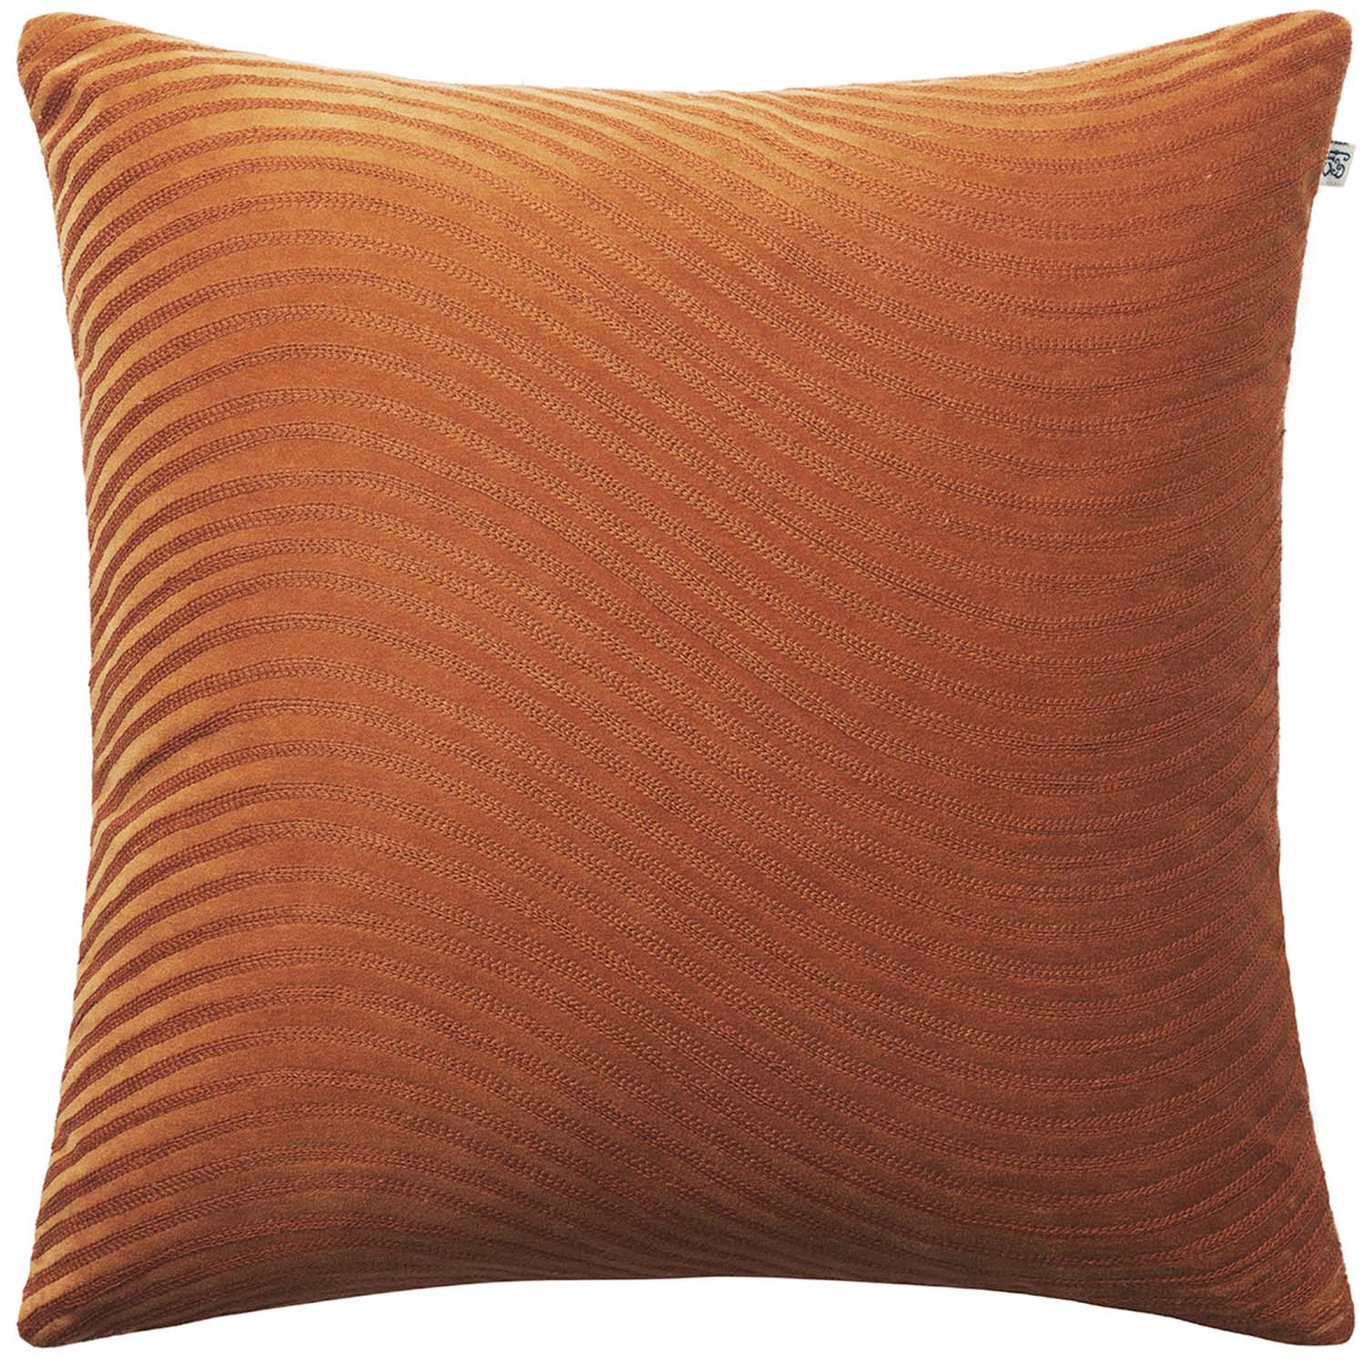 Kunal Cushion Cover Terracotta, 50x50 cm